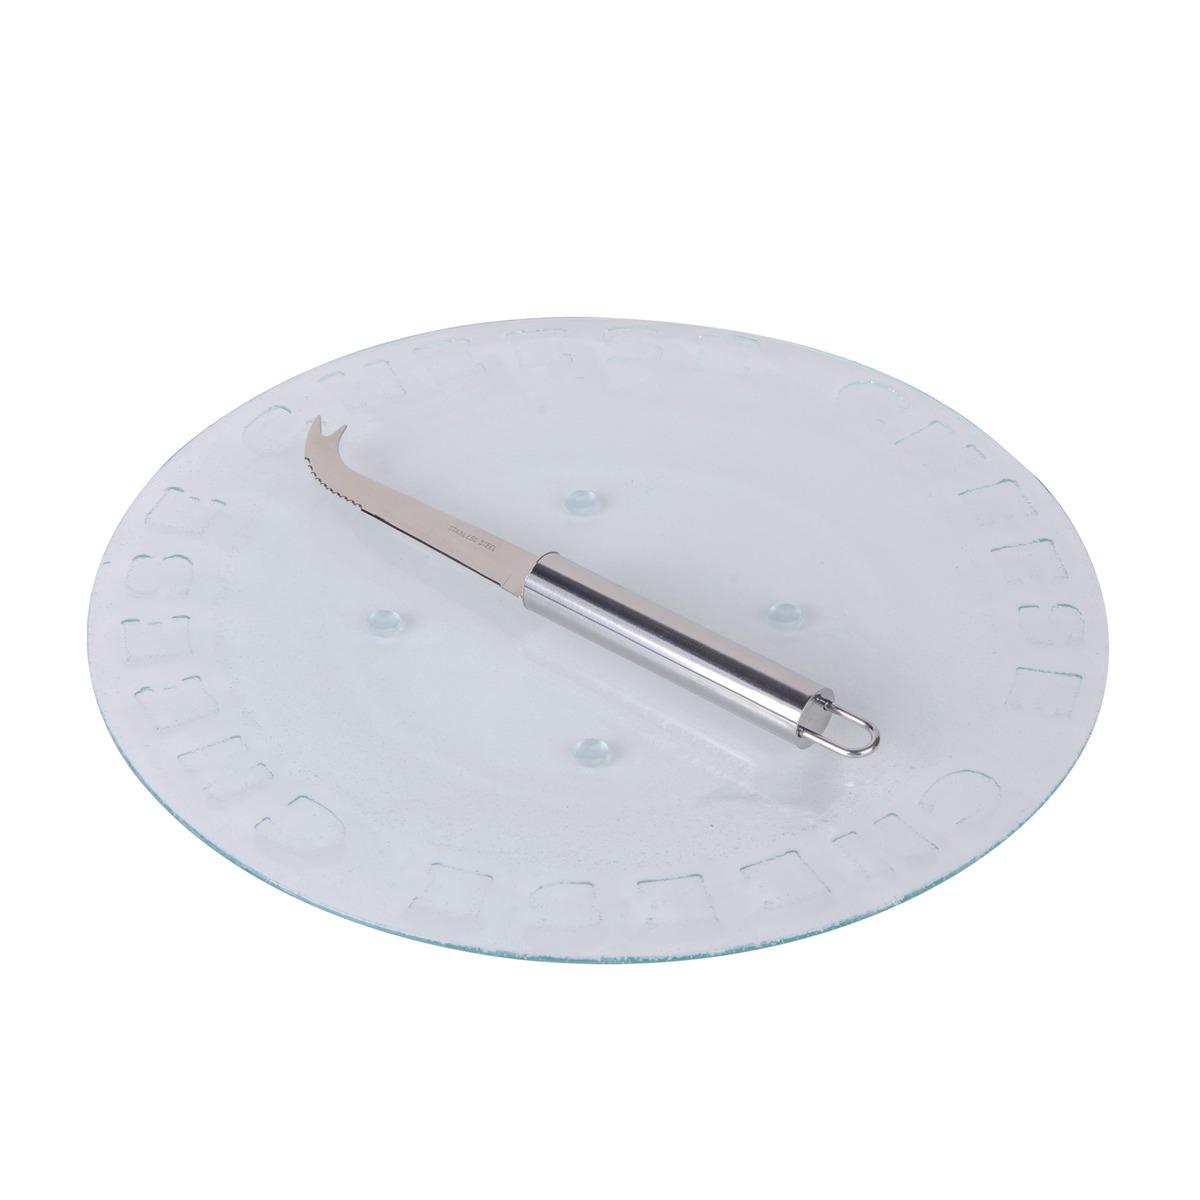 Plateau à fromage en verre + couteau - Diamètre 30 cm - Transparent, gris